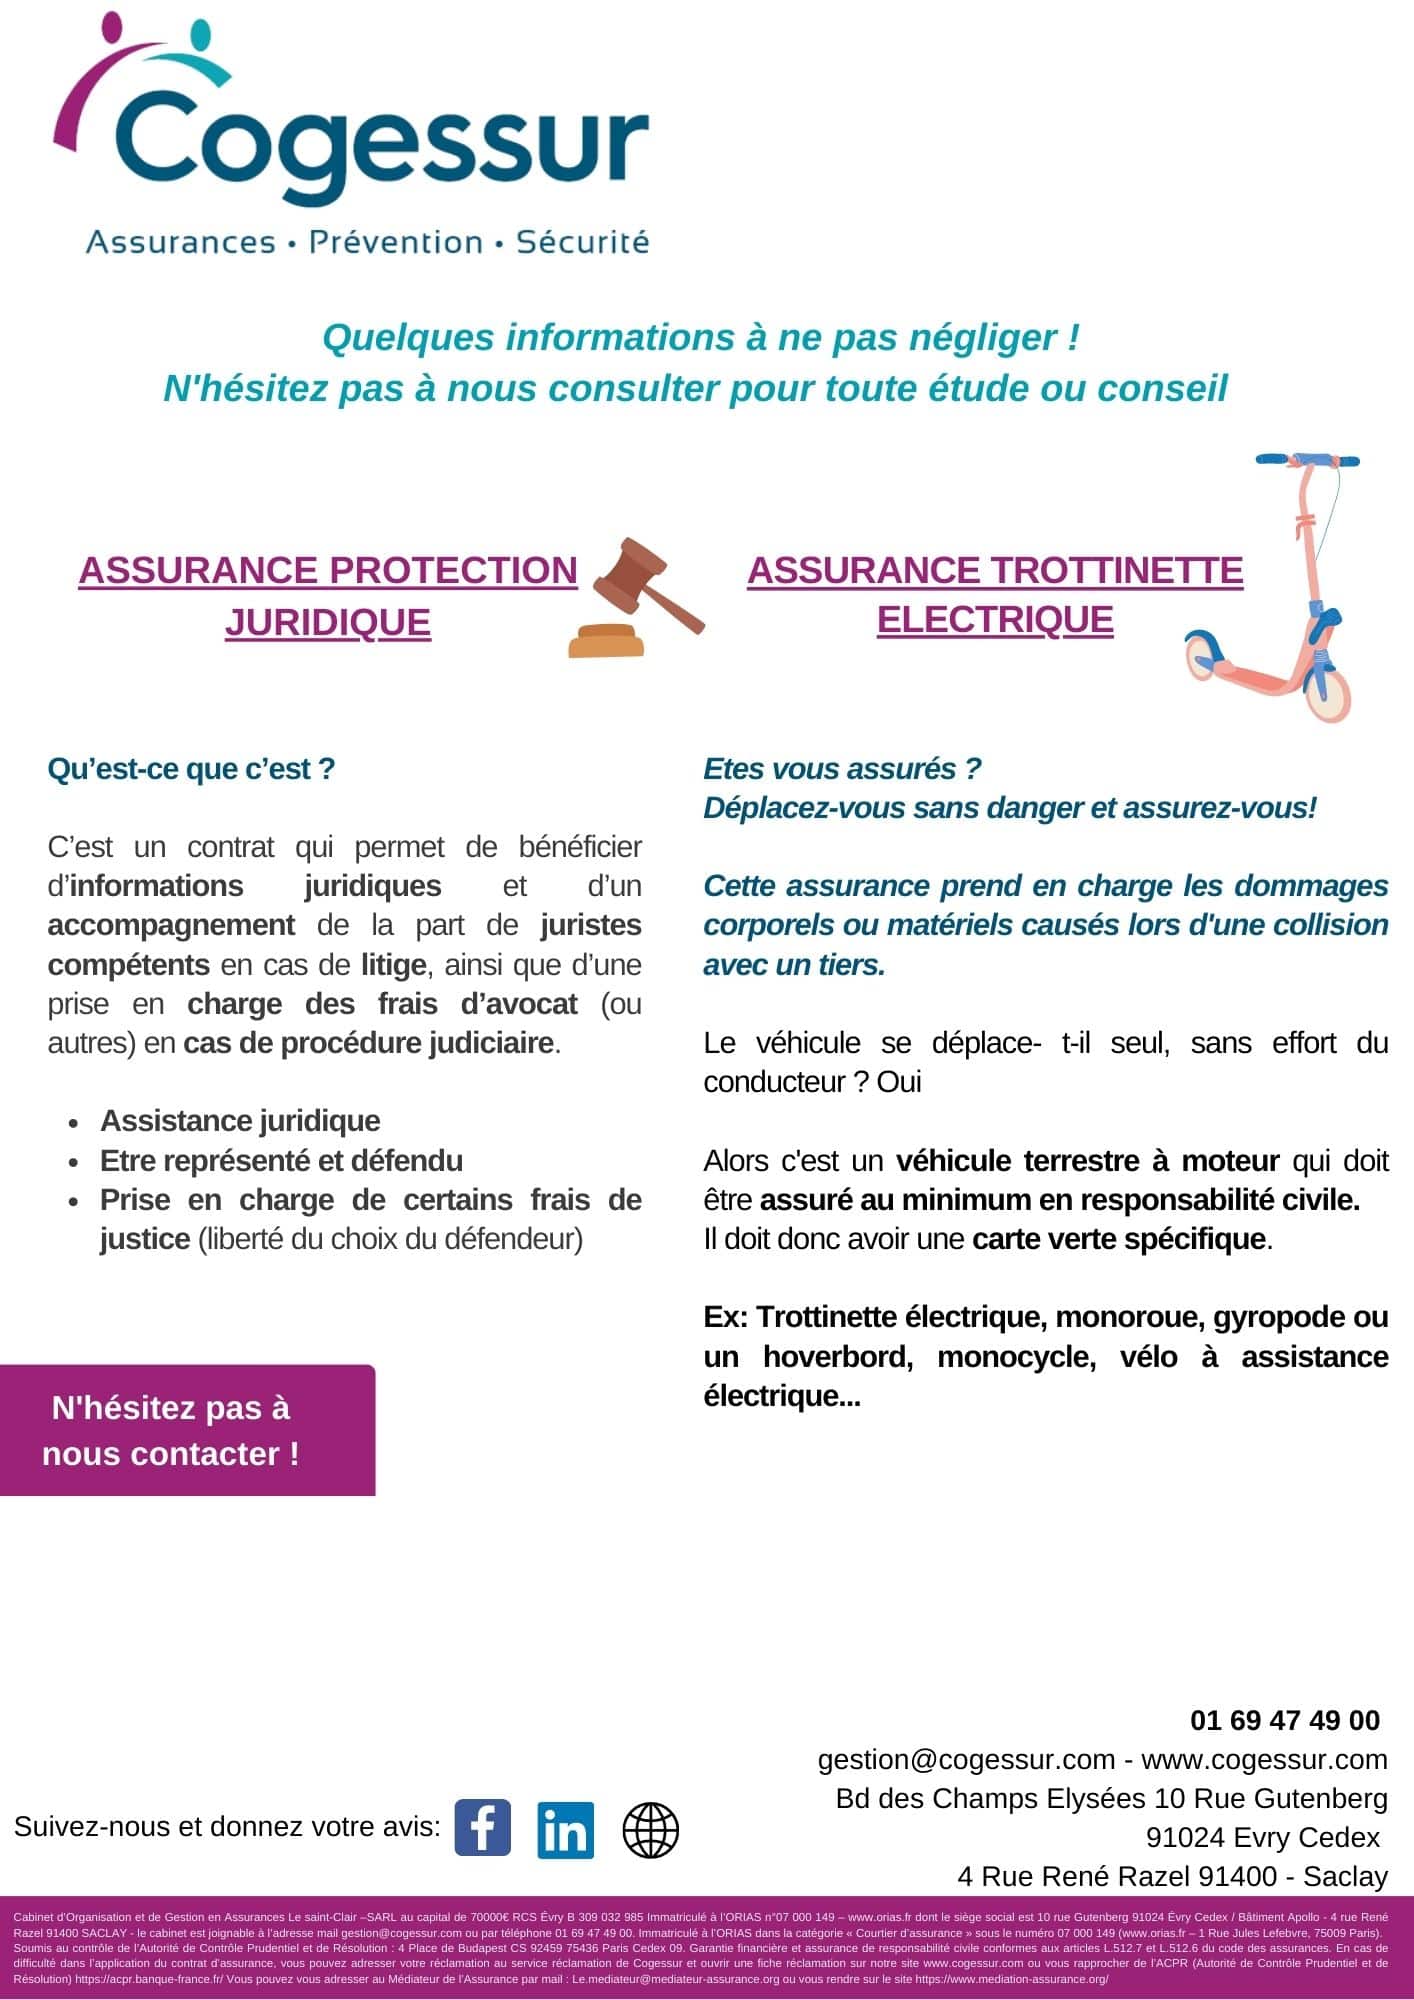 Assurance protection juridique & assurance trottinette électrique